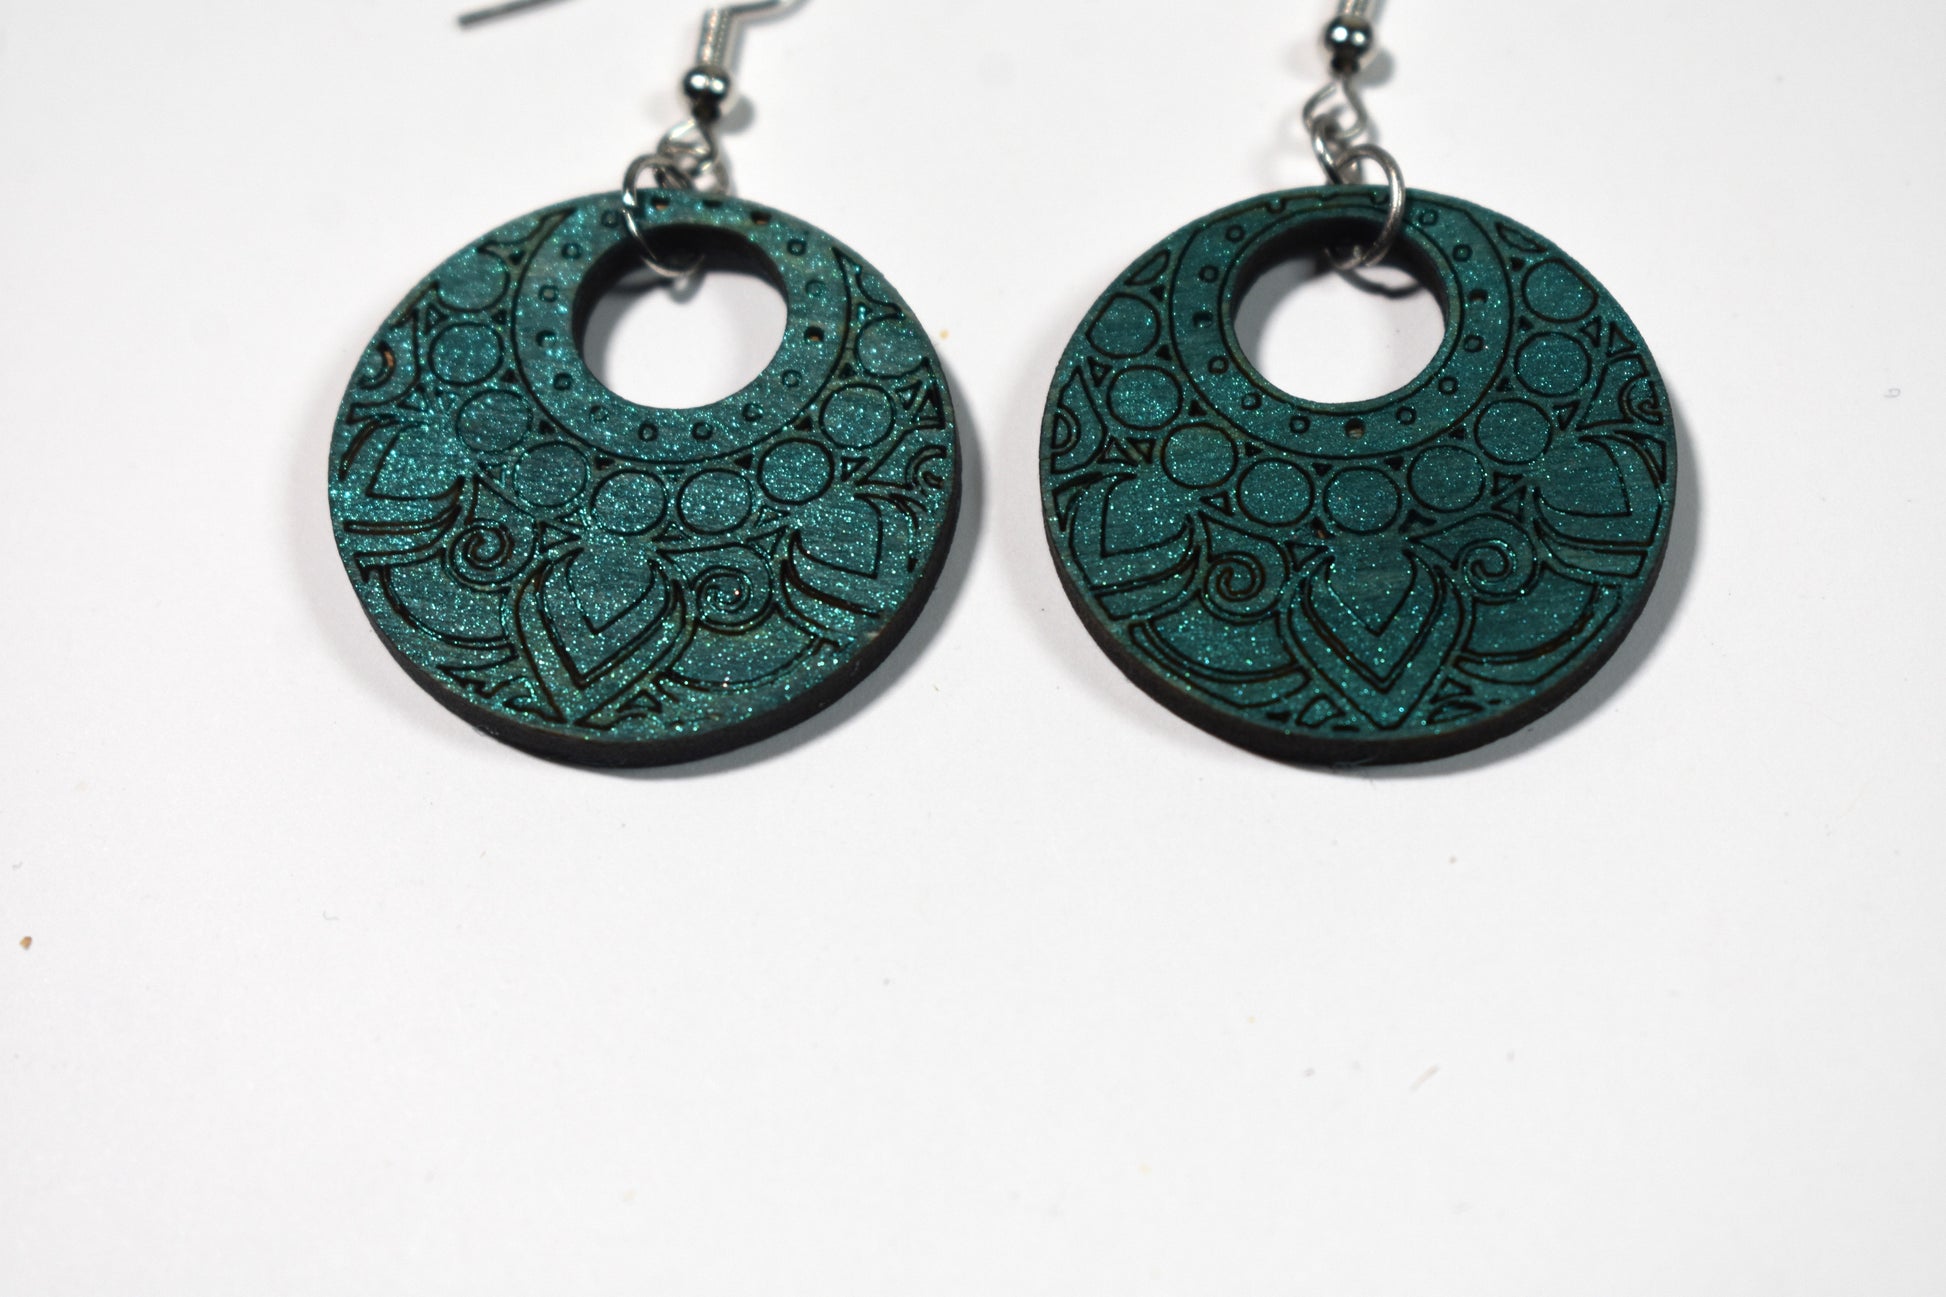 Teal birch mandala engraved earrings - Creative Designs By Kari